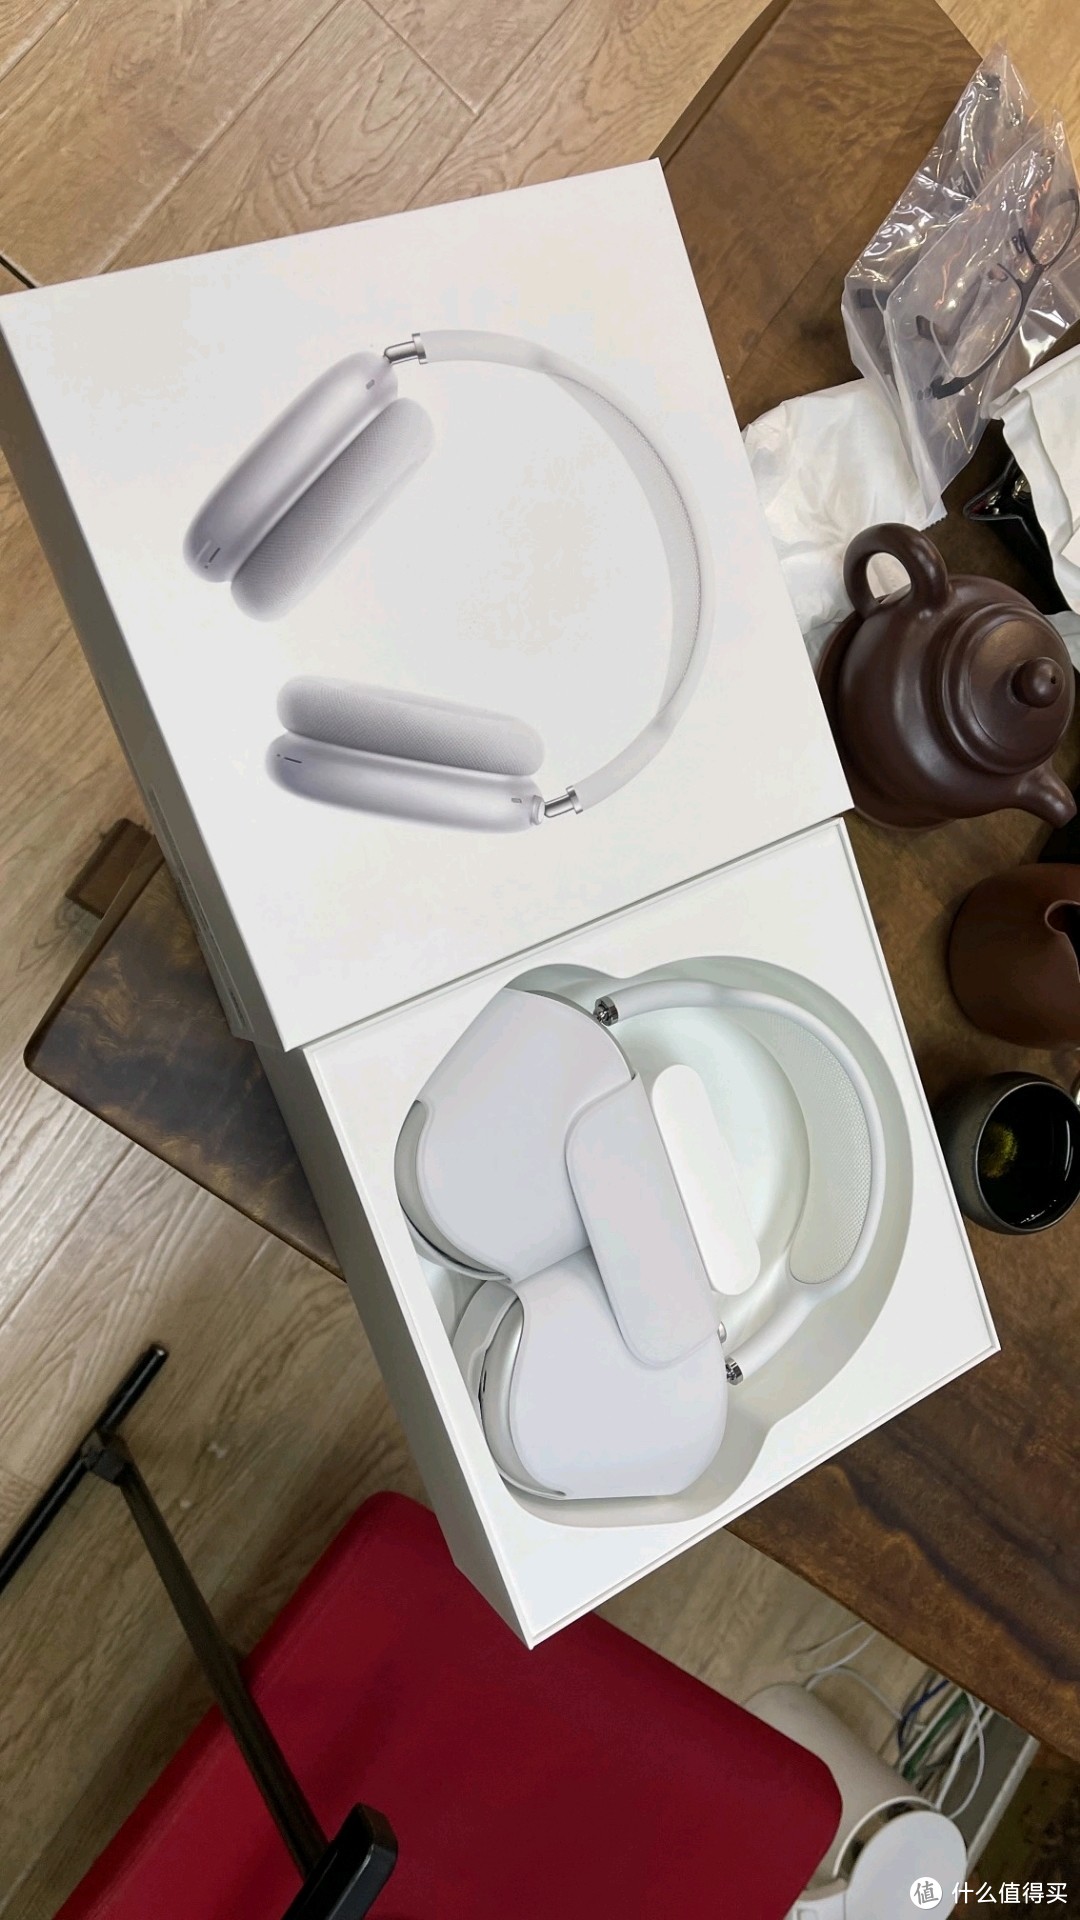 05起apple 苹果 airpods max 头戴式耳机商品官网购买,多多降300!